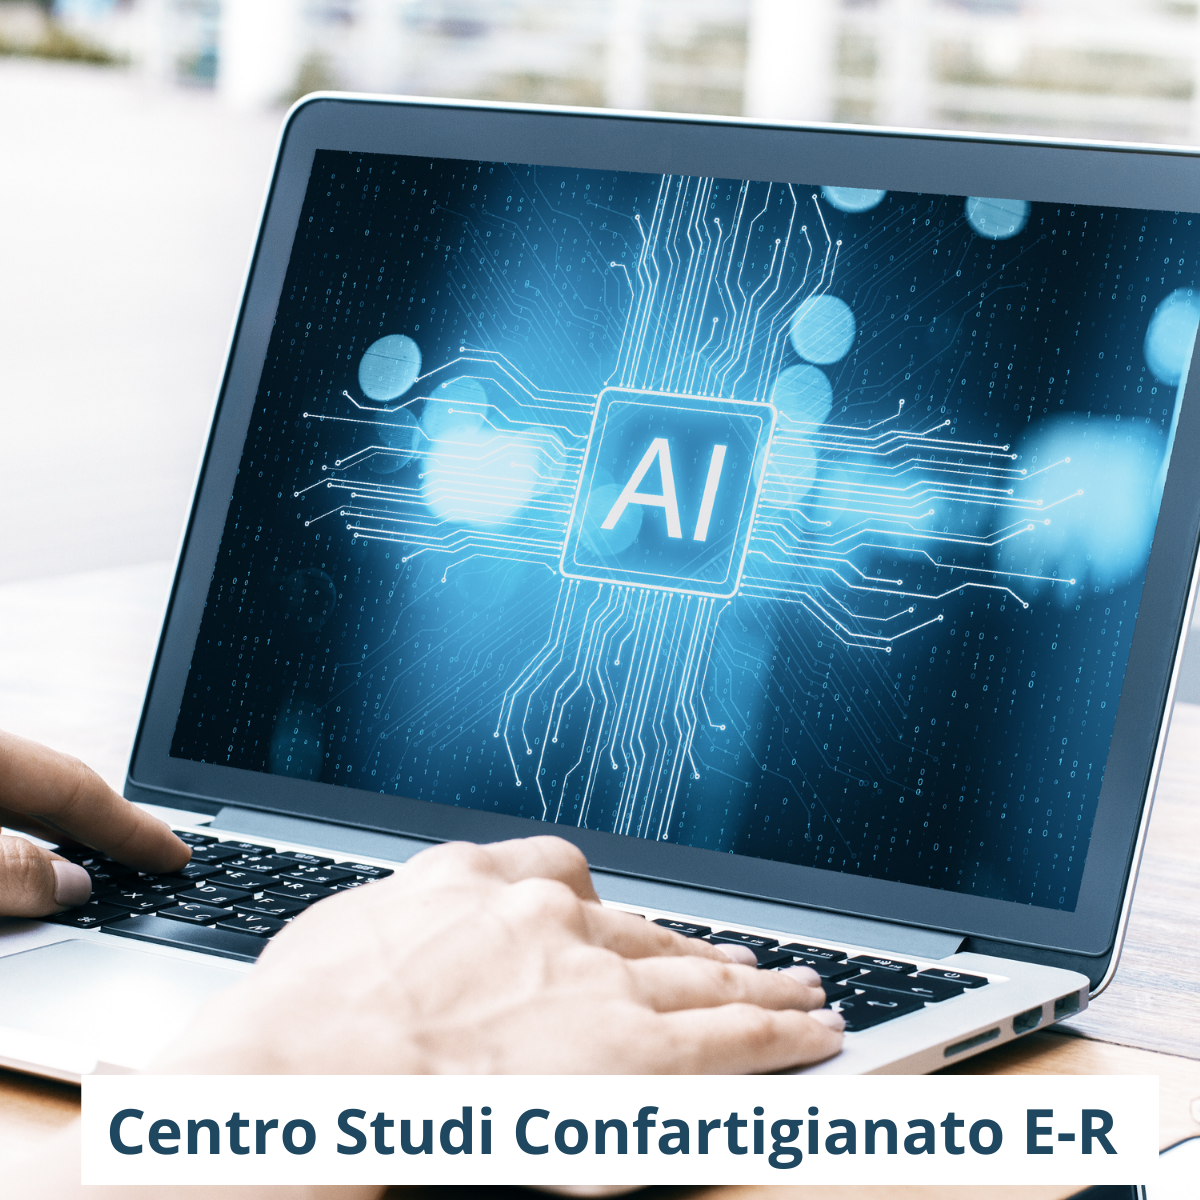 Centro studi Confartigianato Emilia Romagna transizione digitale Intelligenza artificiale